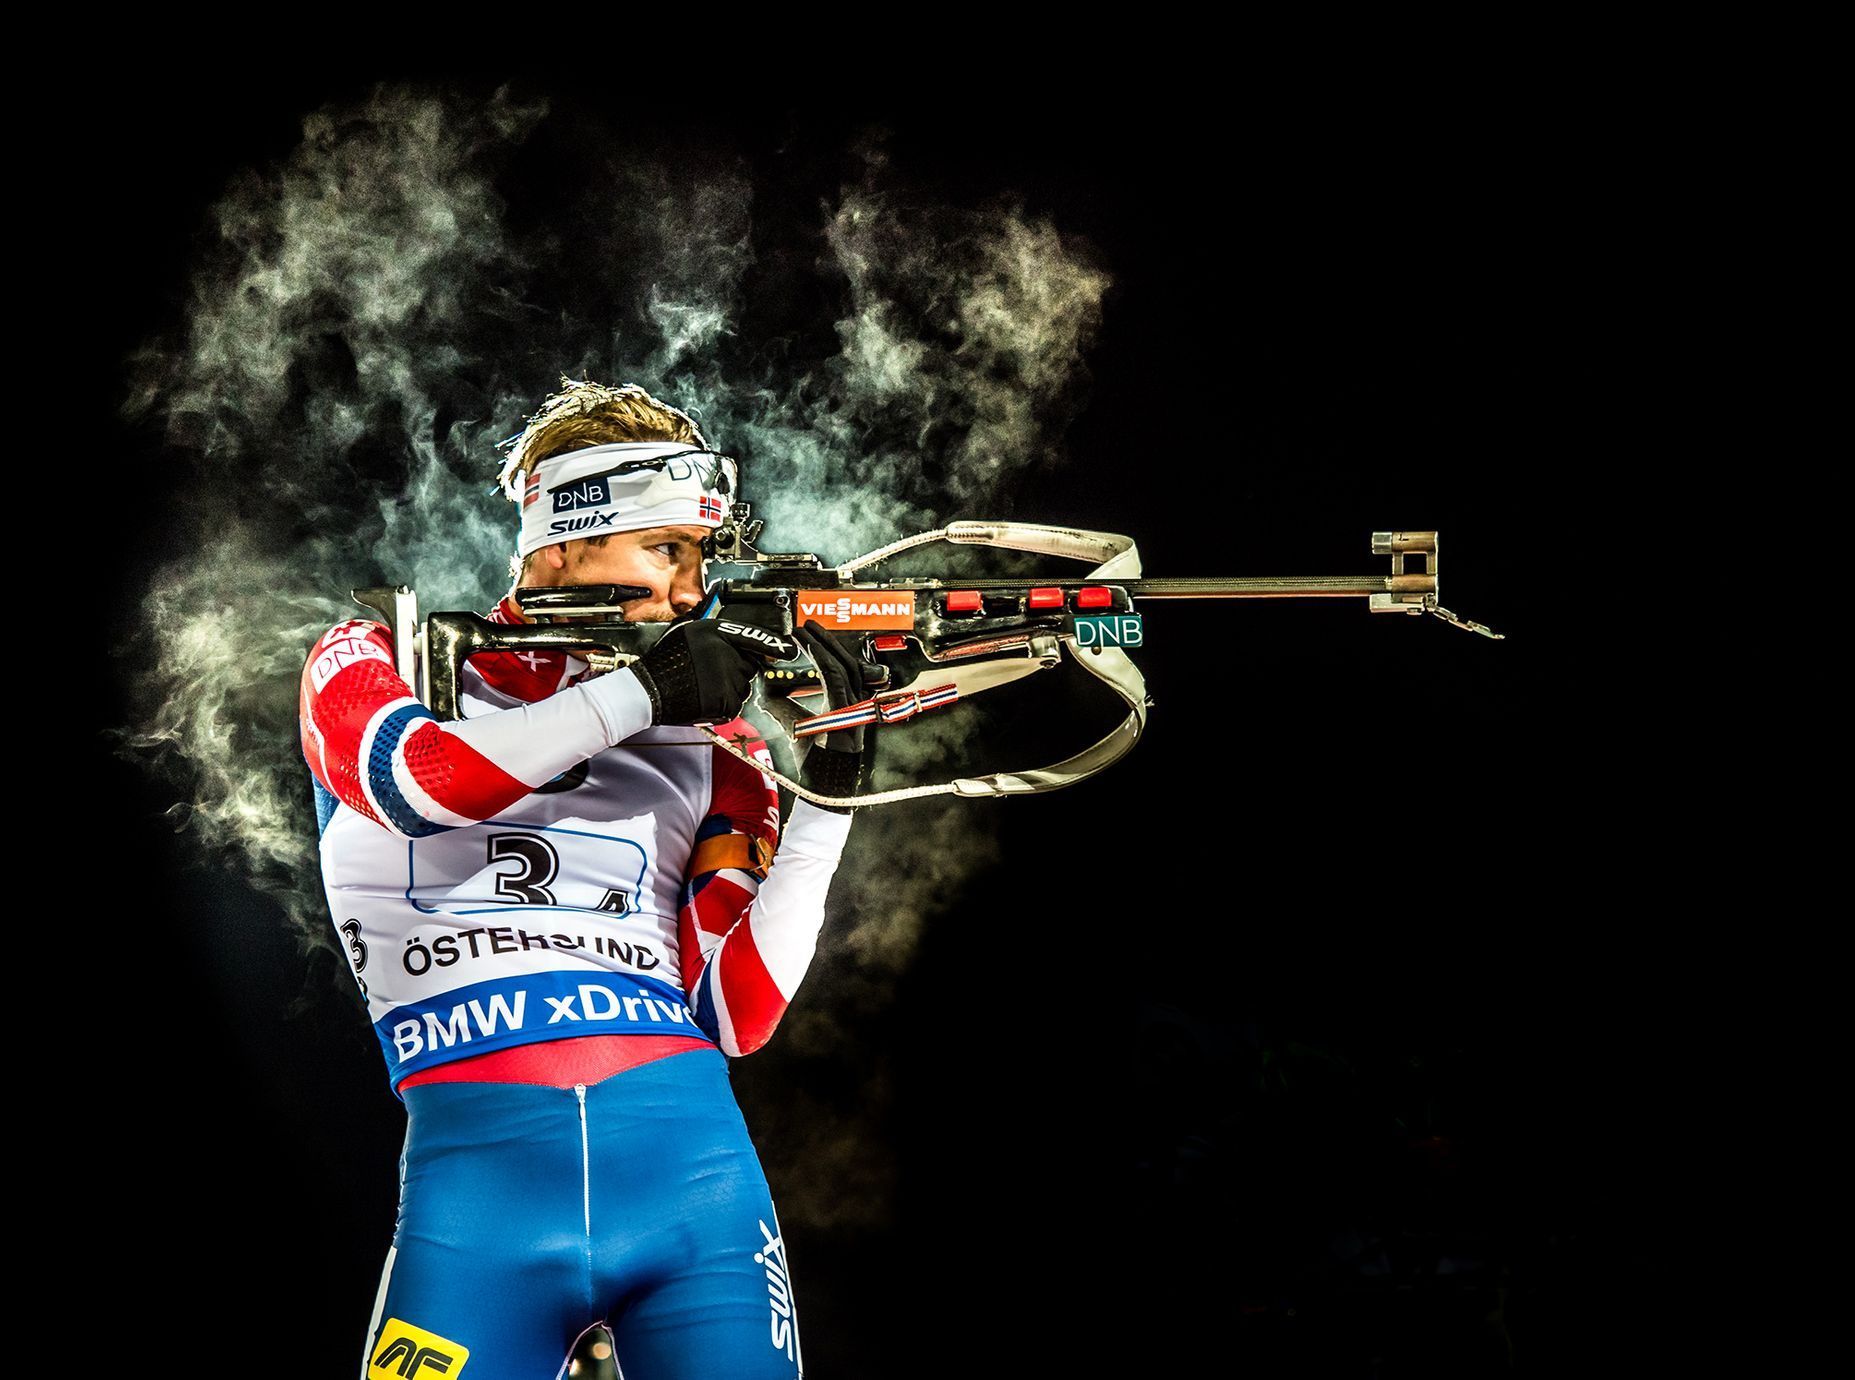 Petr Slavík, výběr z portfolia oficiálního fotografa české biatlonové reprezentace